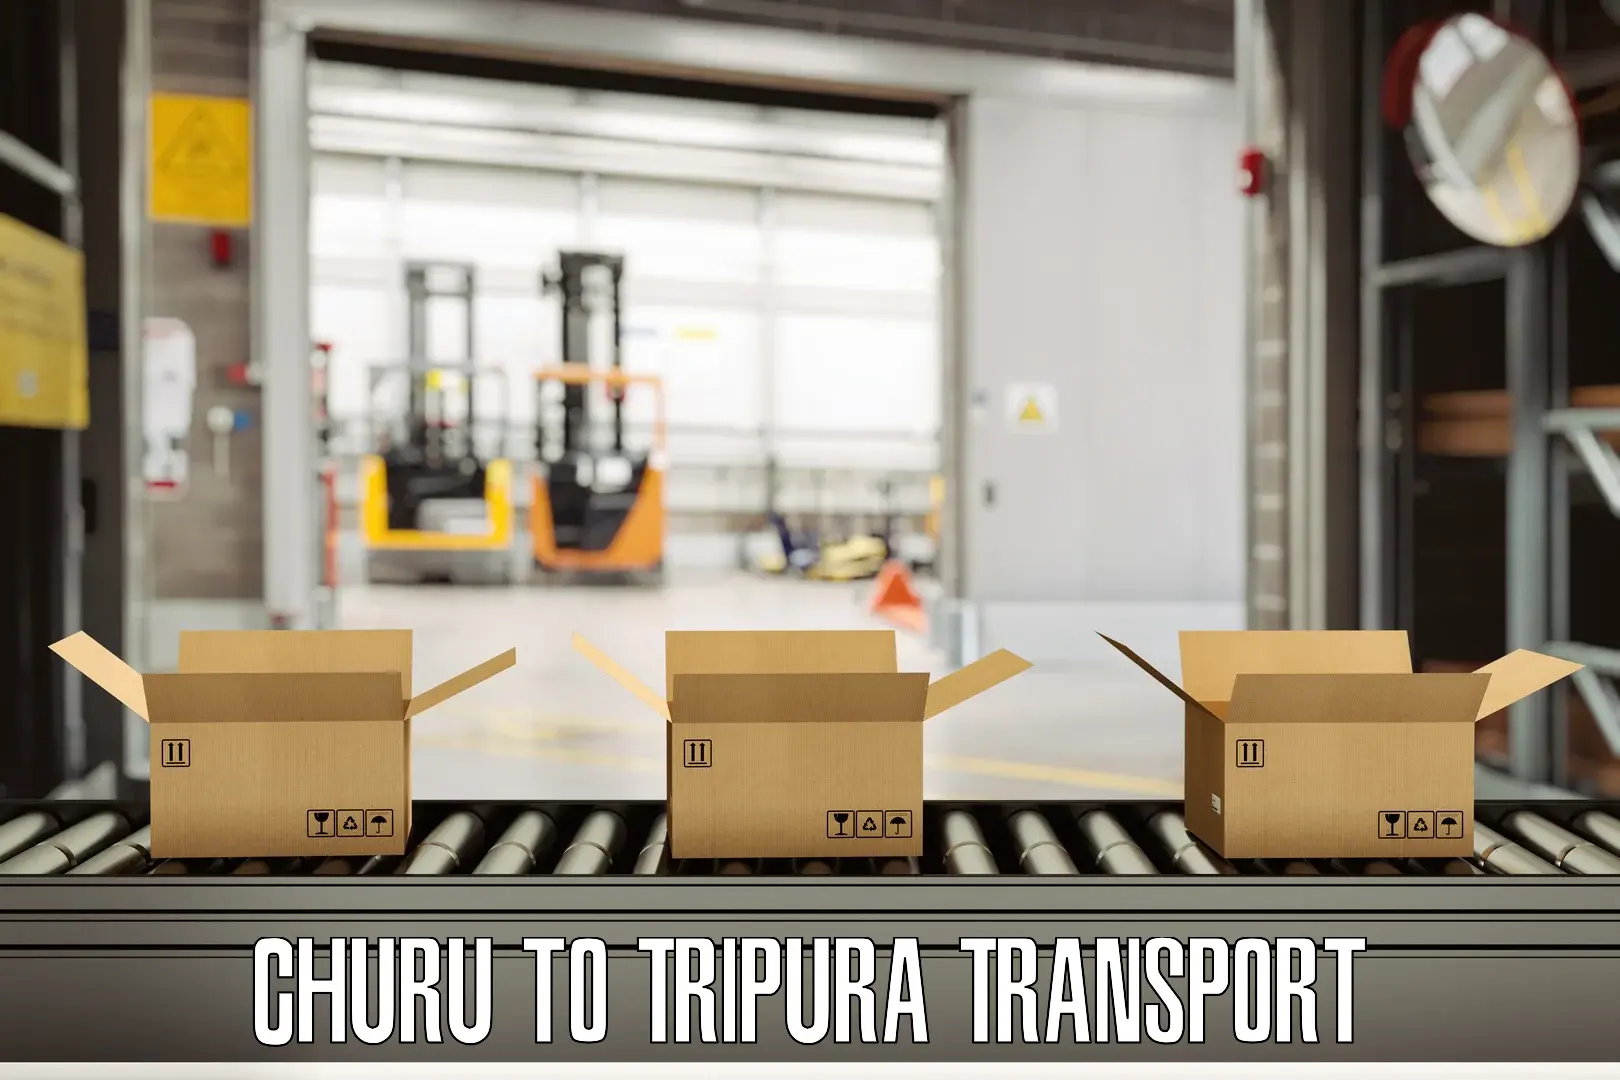 Air cargo transport services Churu to Dharmanagar